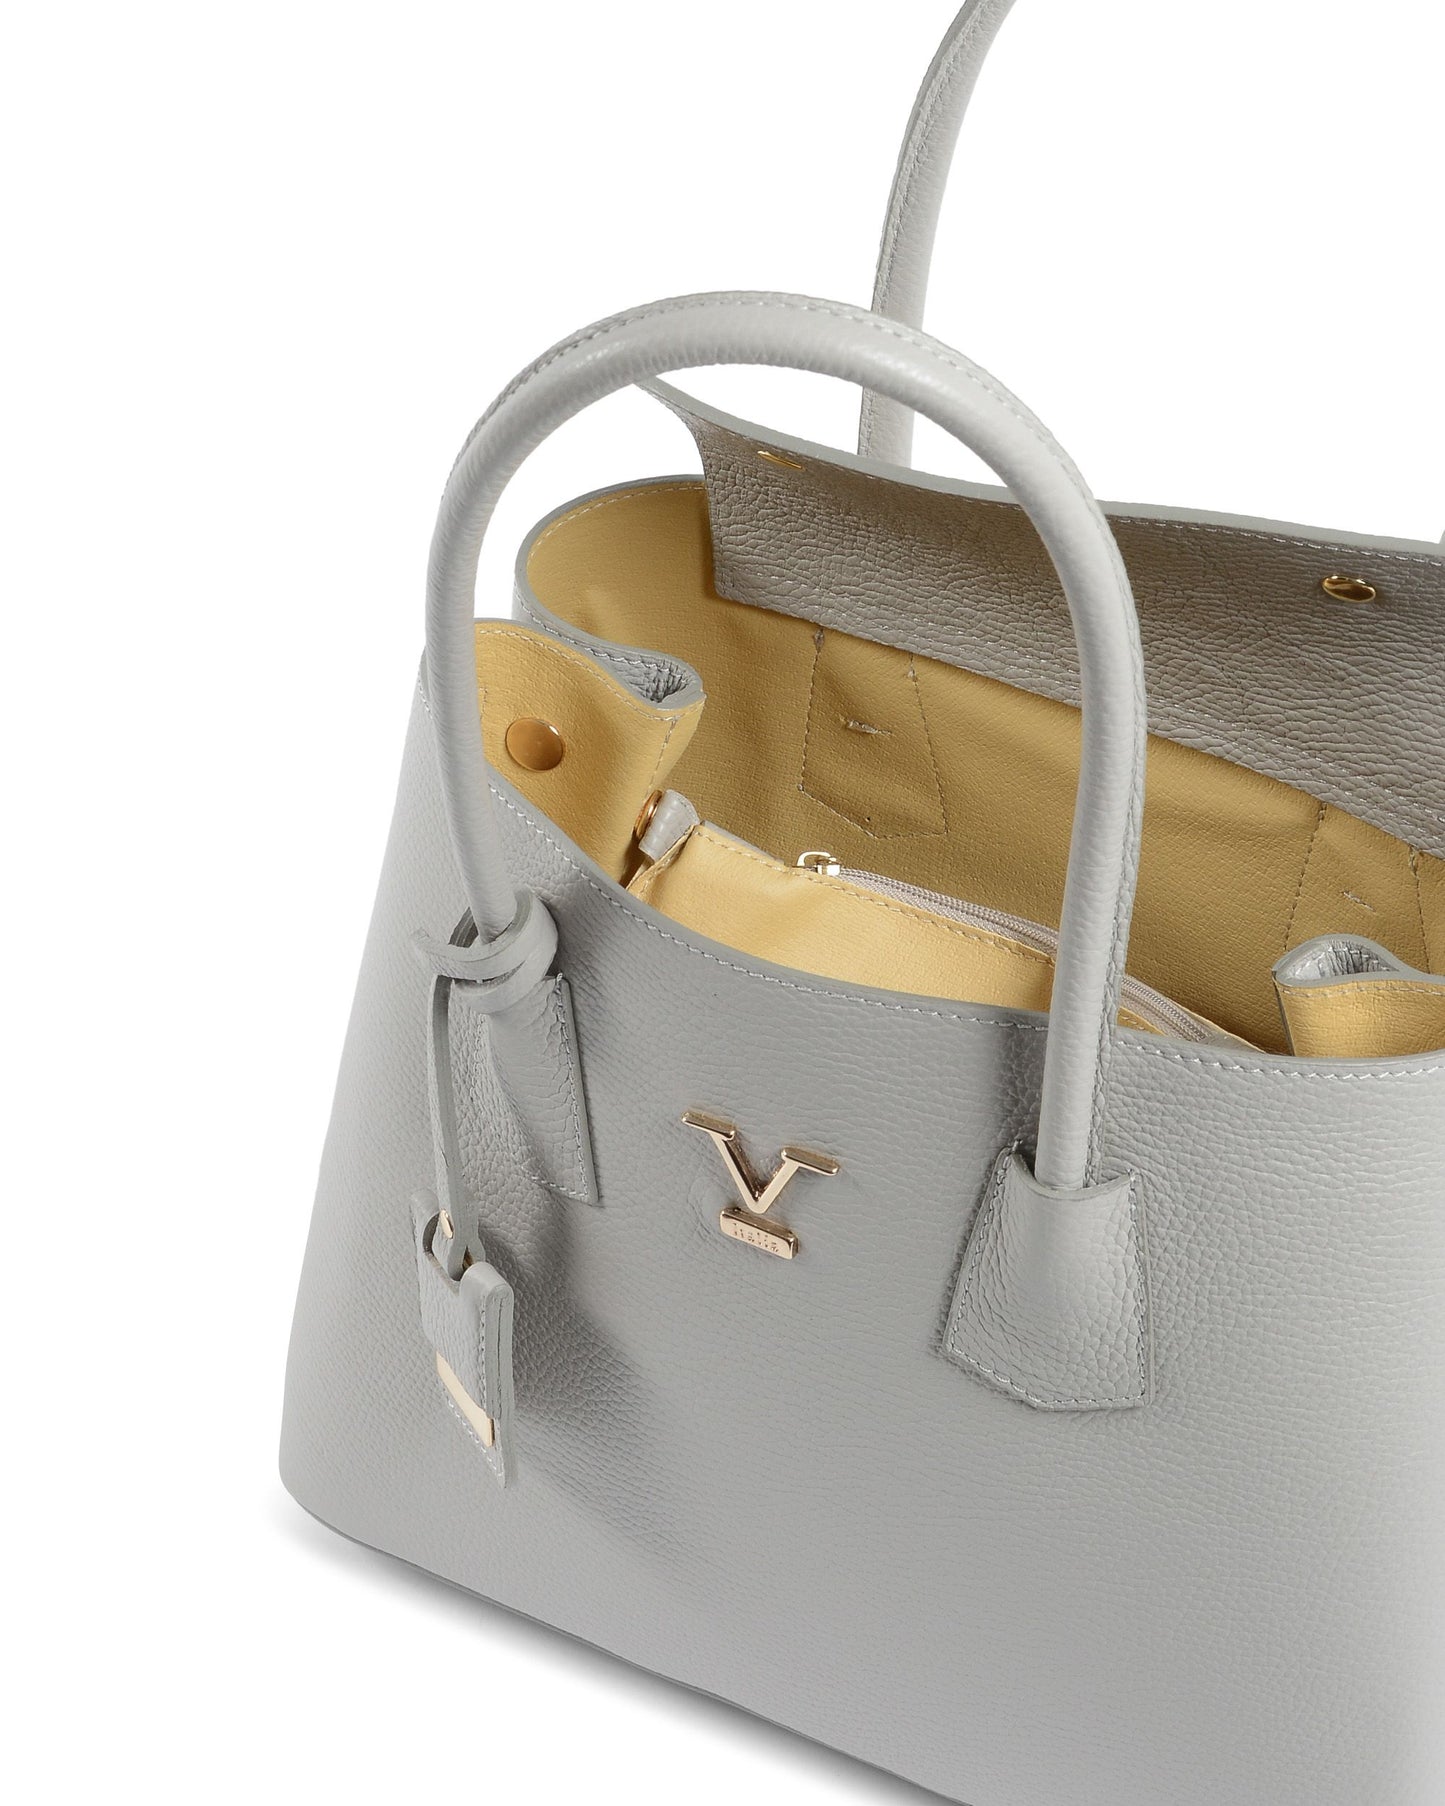 V Italia Womens Handbag Grey 10510 DOLLARO GRIGIO PERLA